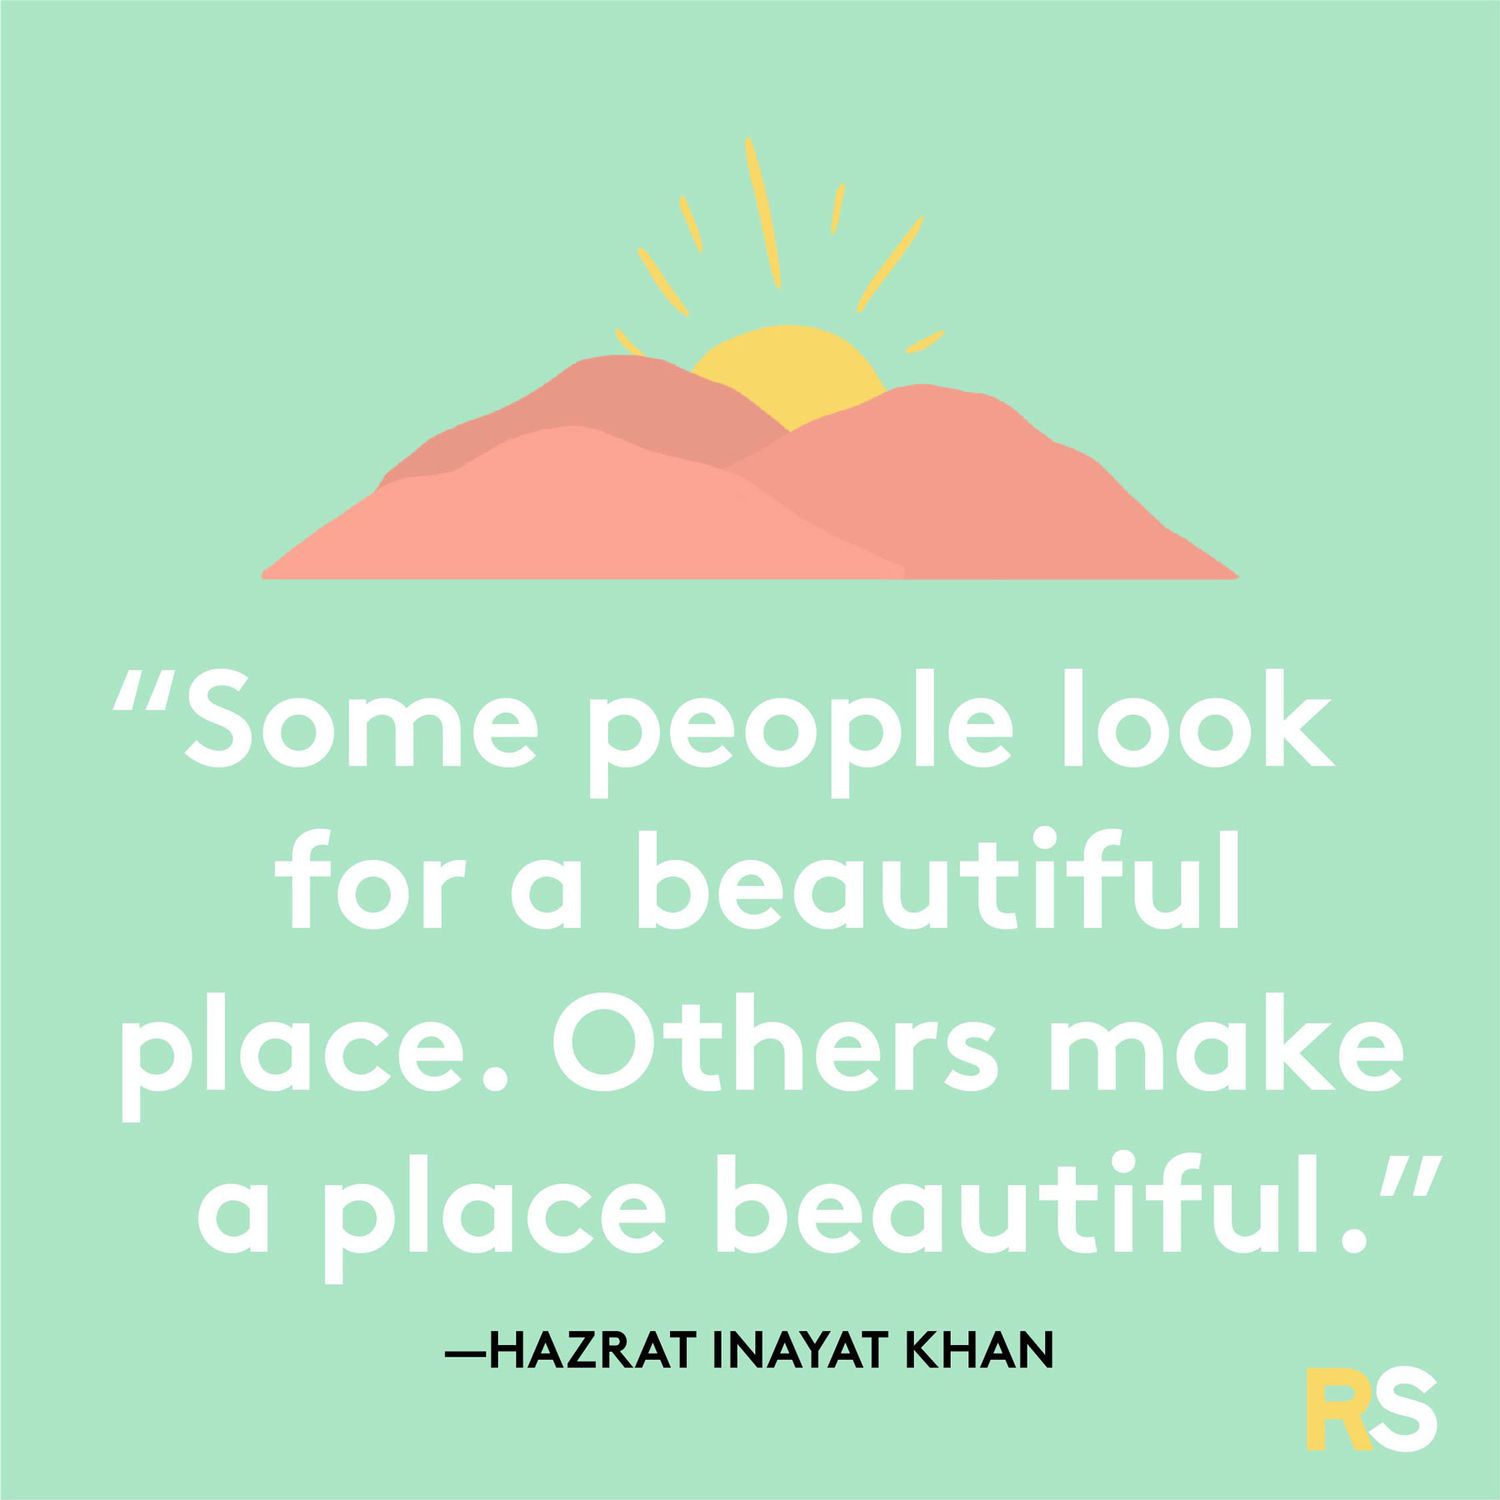 Positive motivating quotes, captions, messages – Hazrat Inayat Khan quote